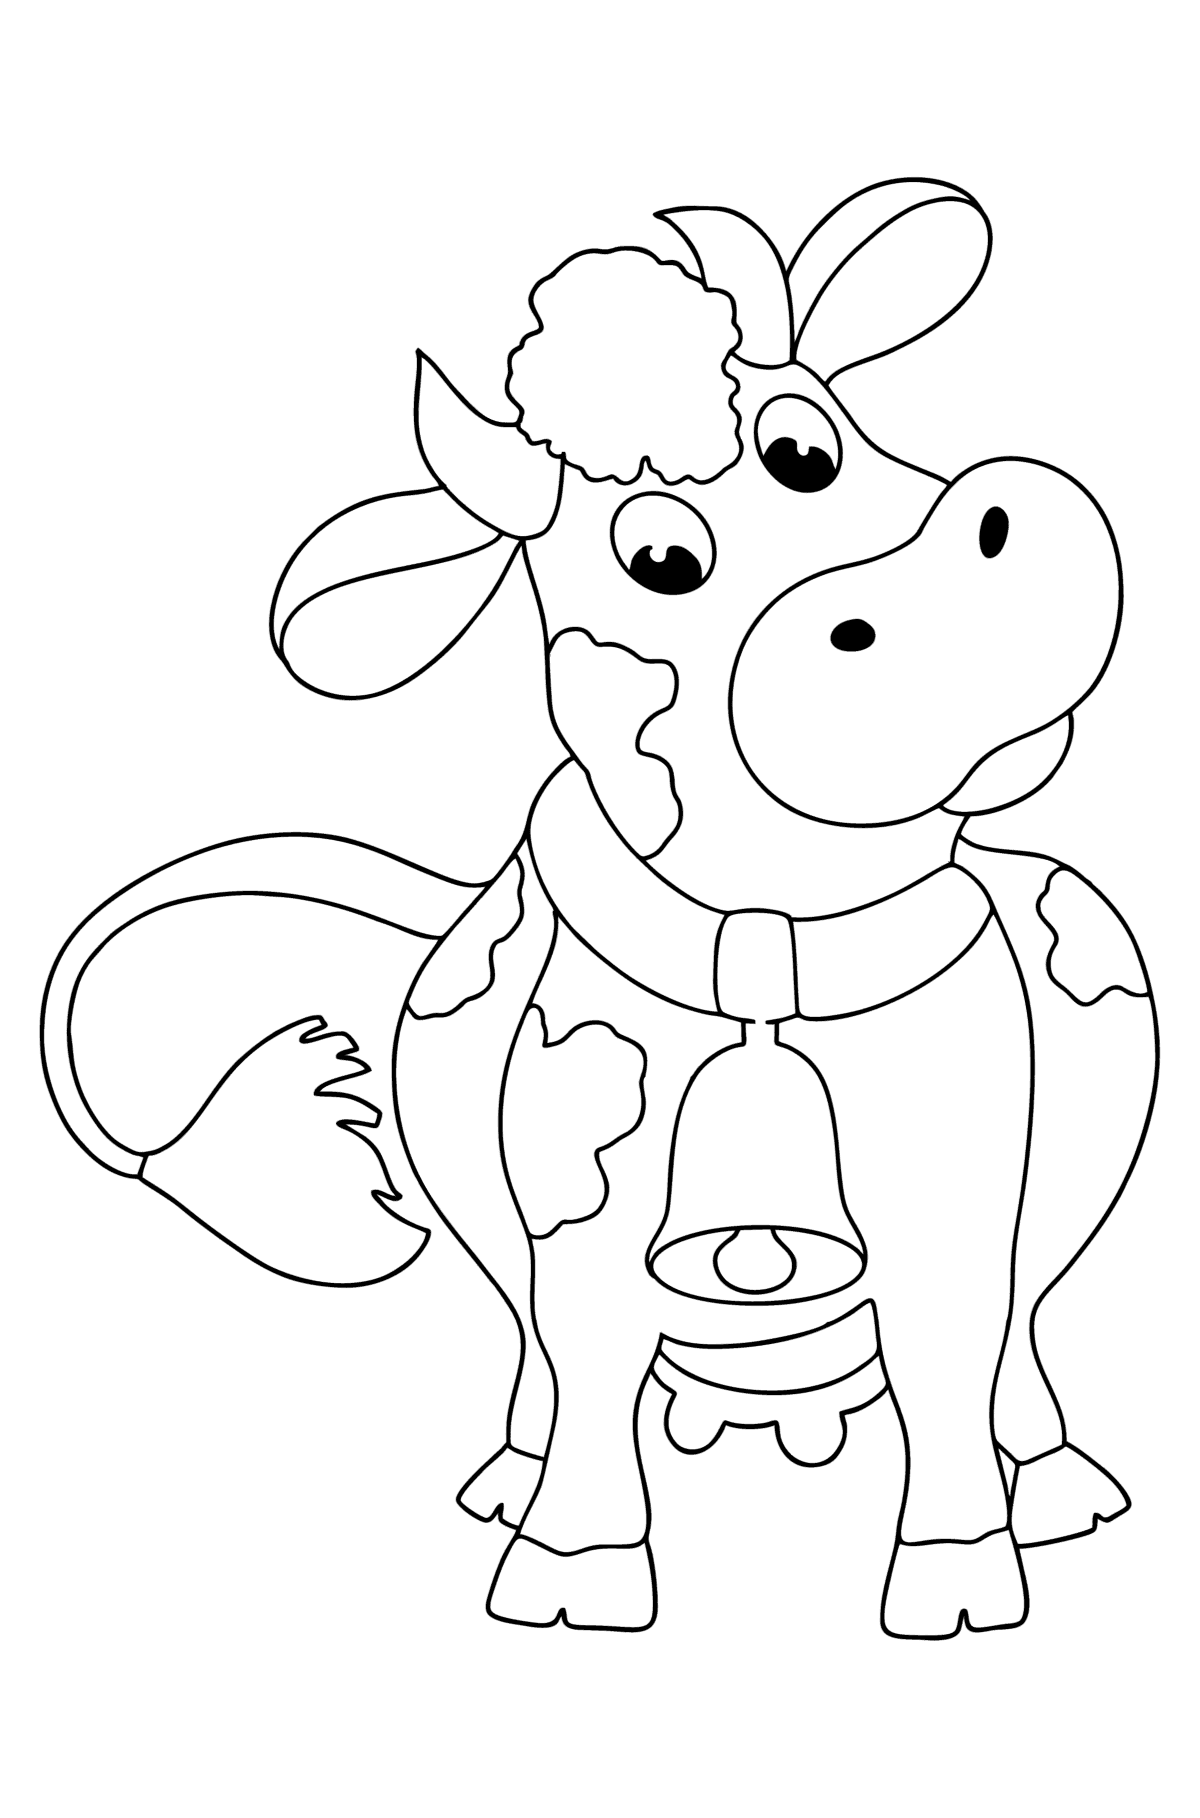 Boyama sayfası bir çan ile inek - Boyamalar çocuklar için